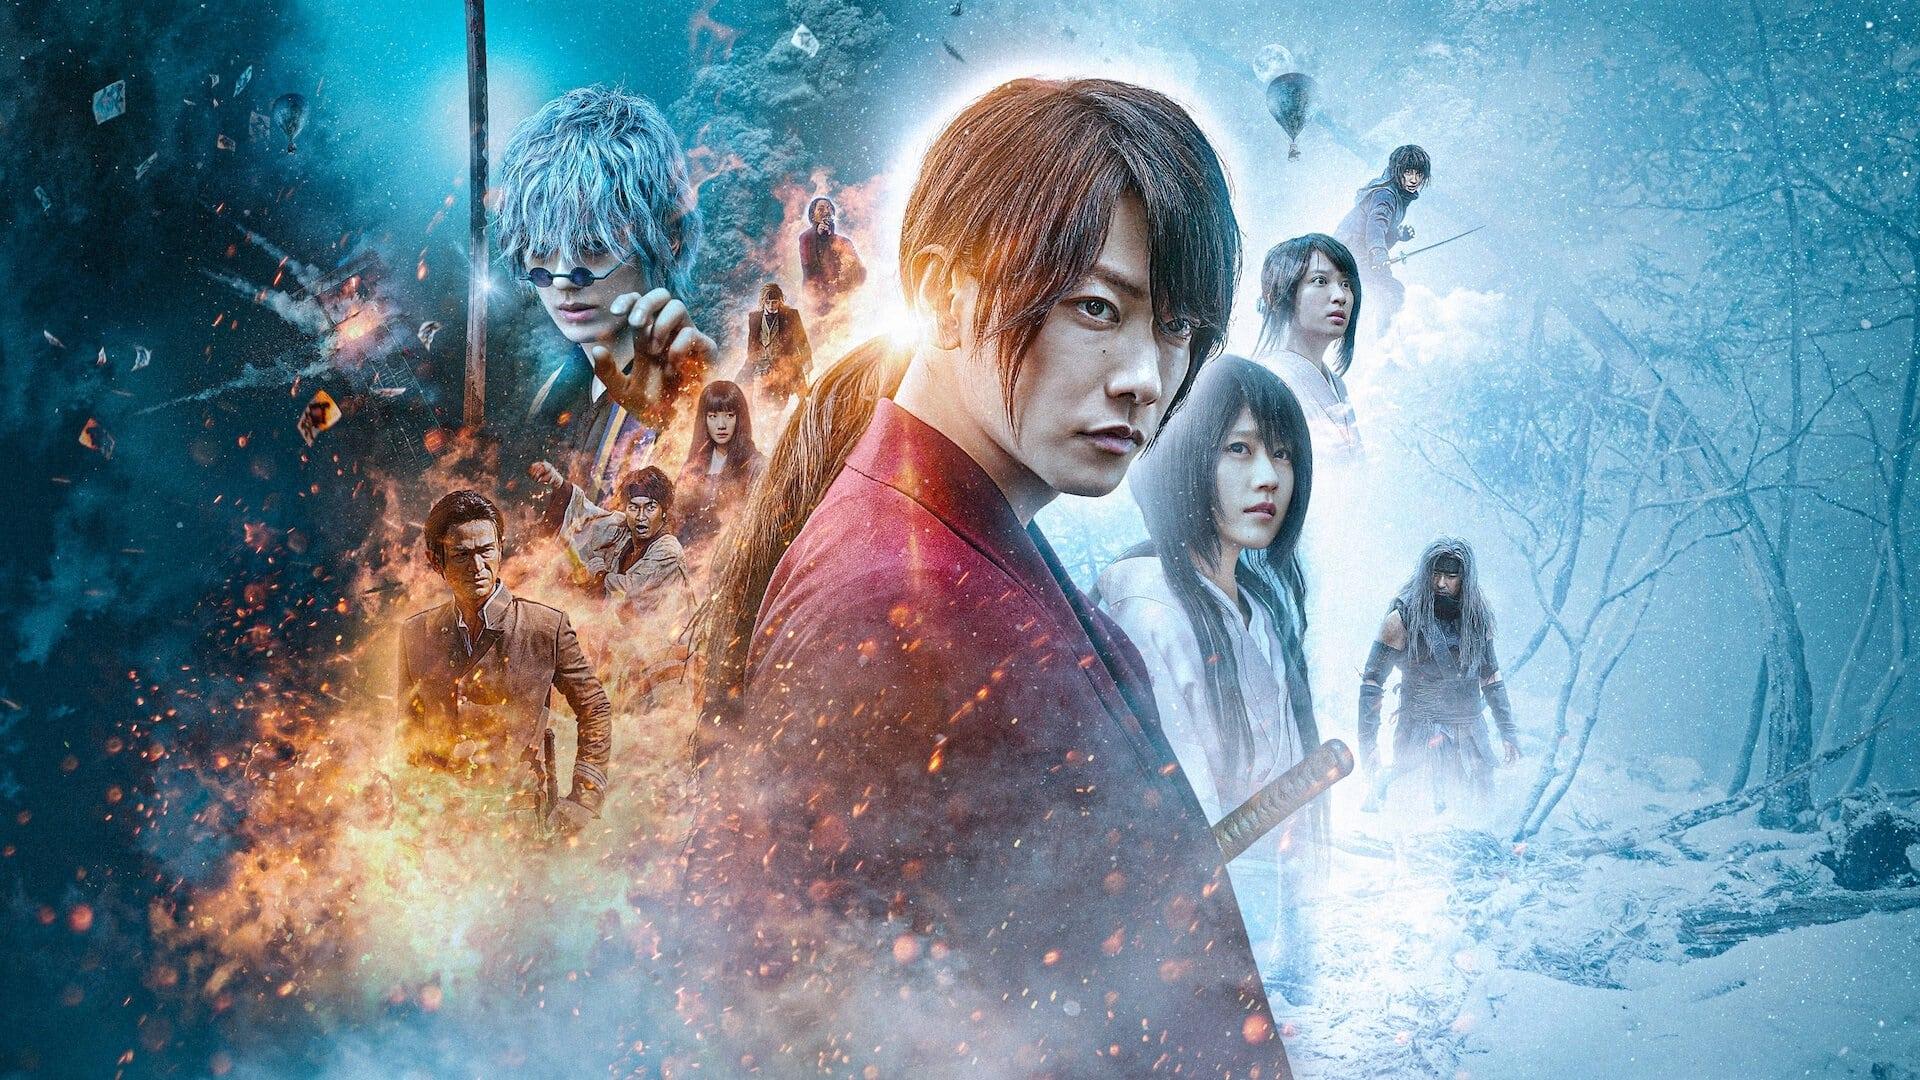 Rurouni Kenshin: The Final backdrop